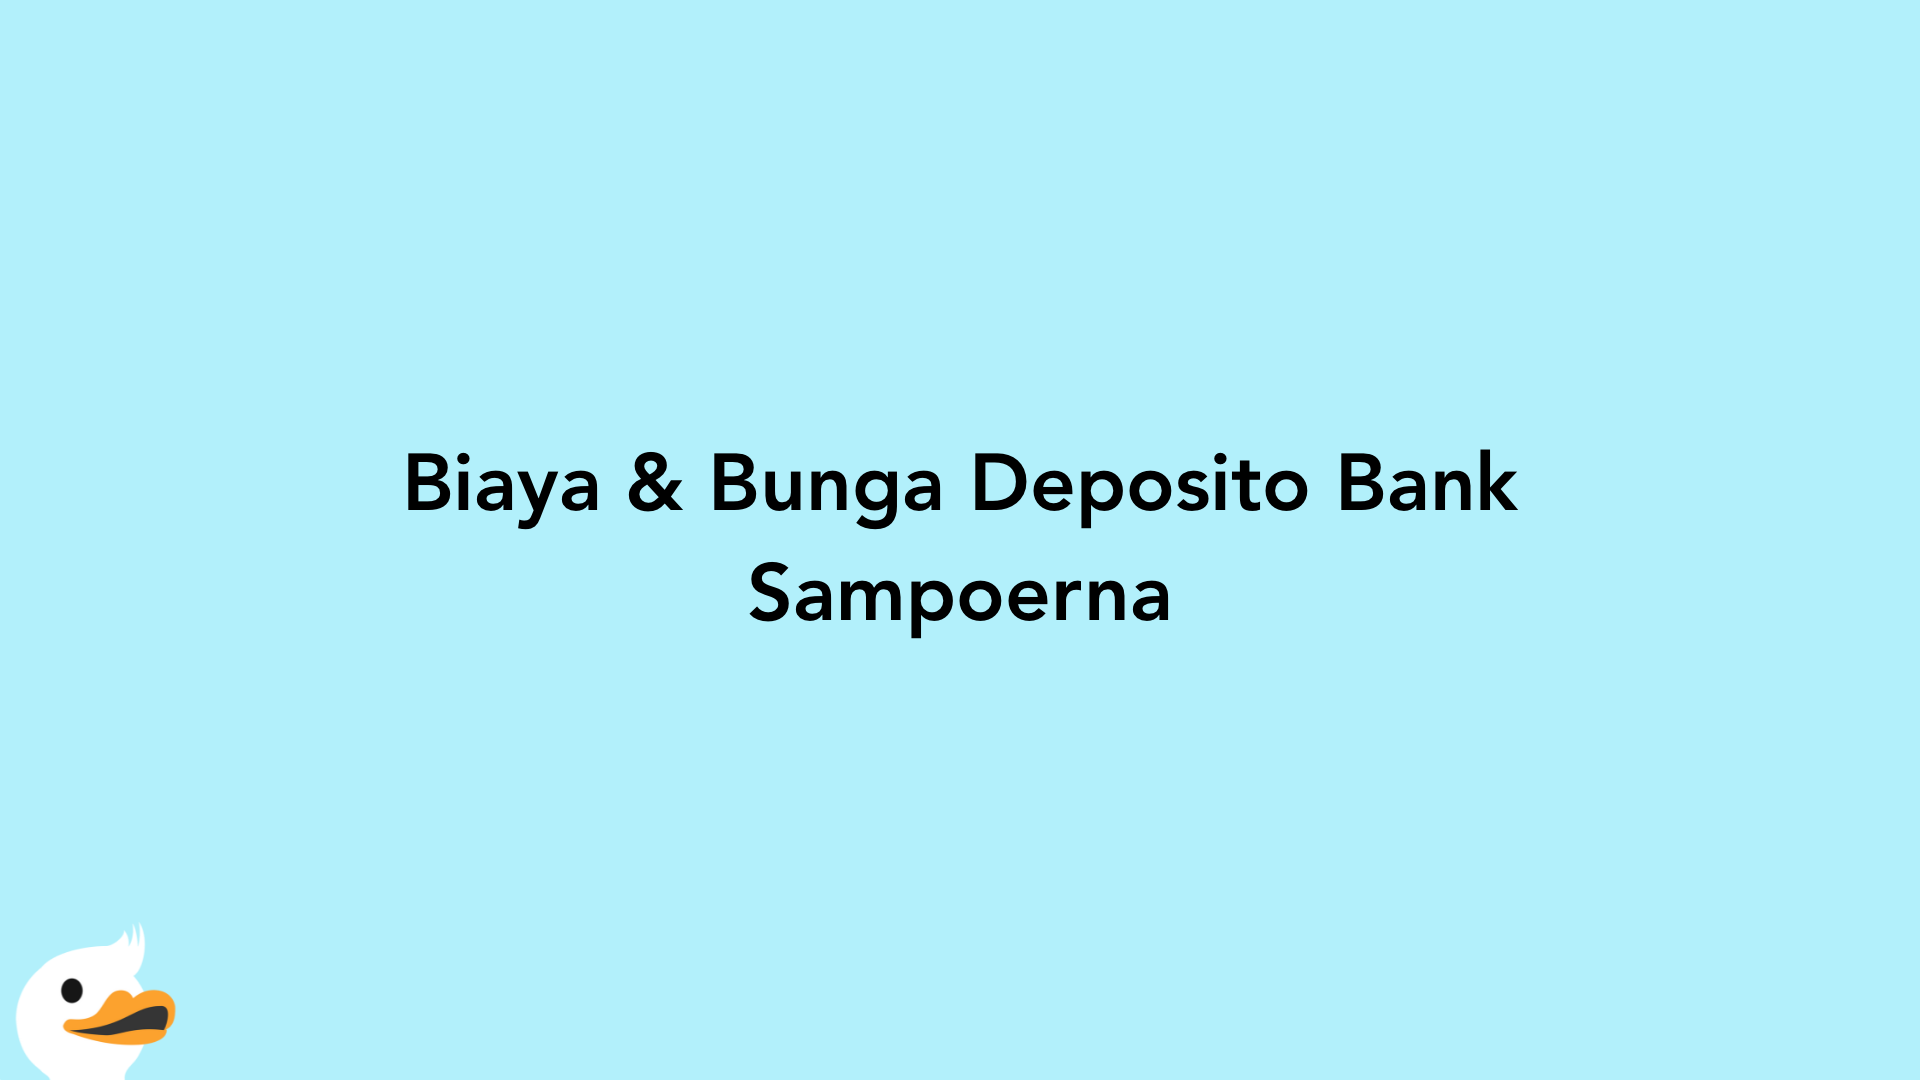 Biaya & Bunga Deposito Bank Sampoerna